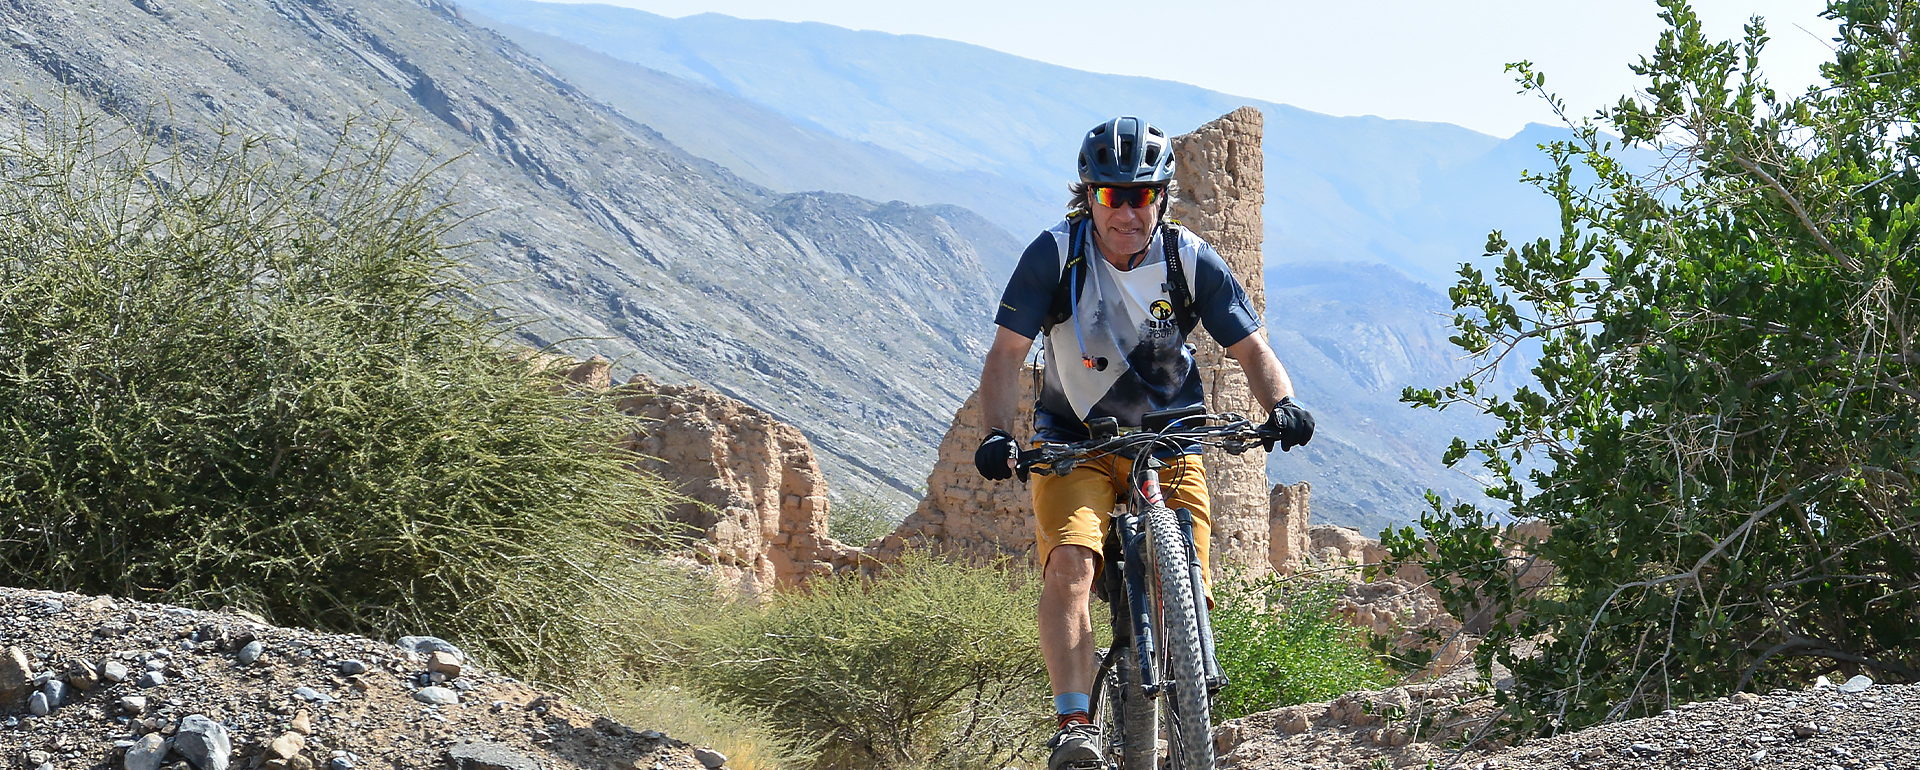 Mountainbike-Reise im Oman